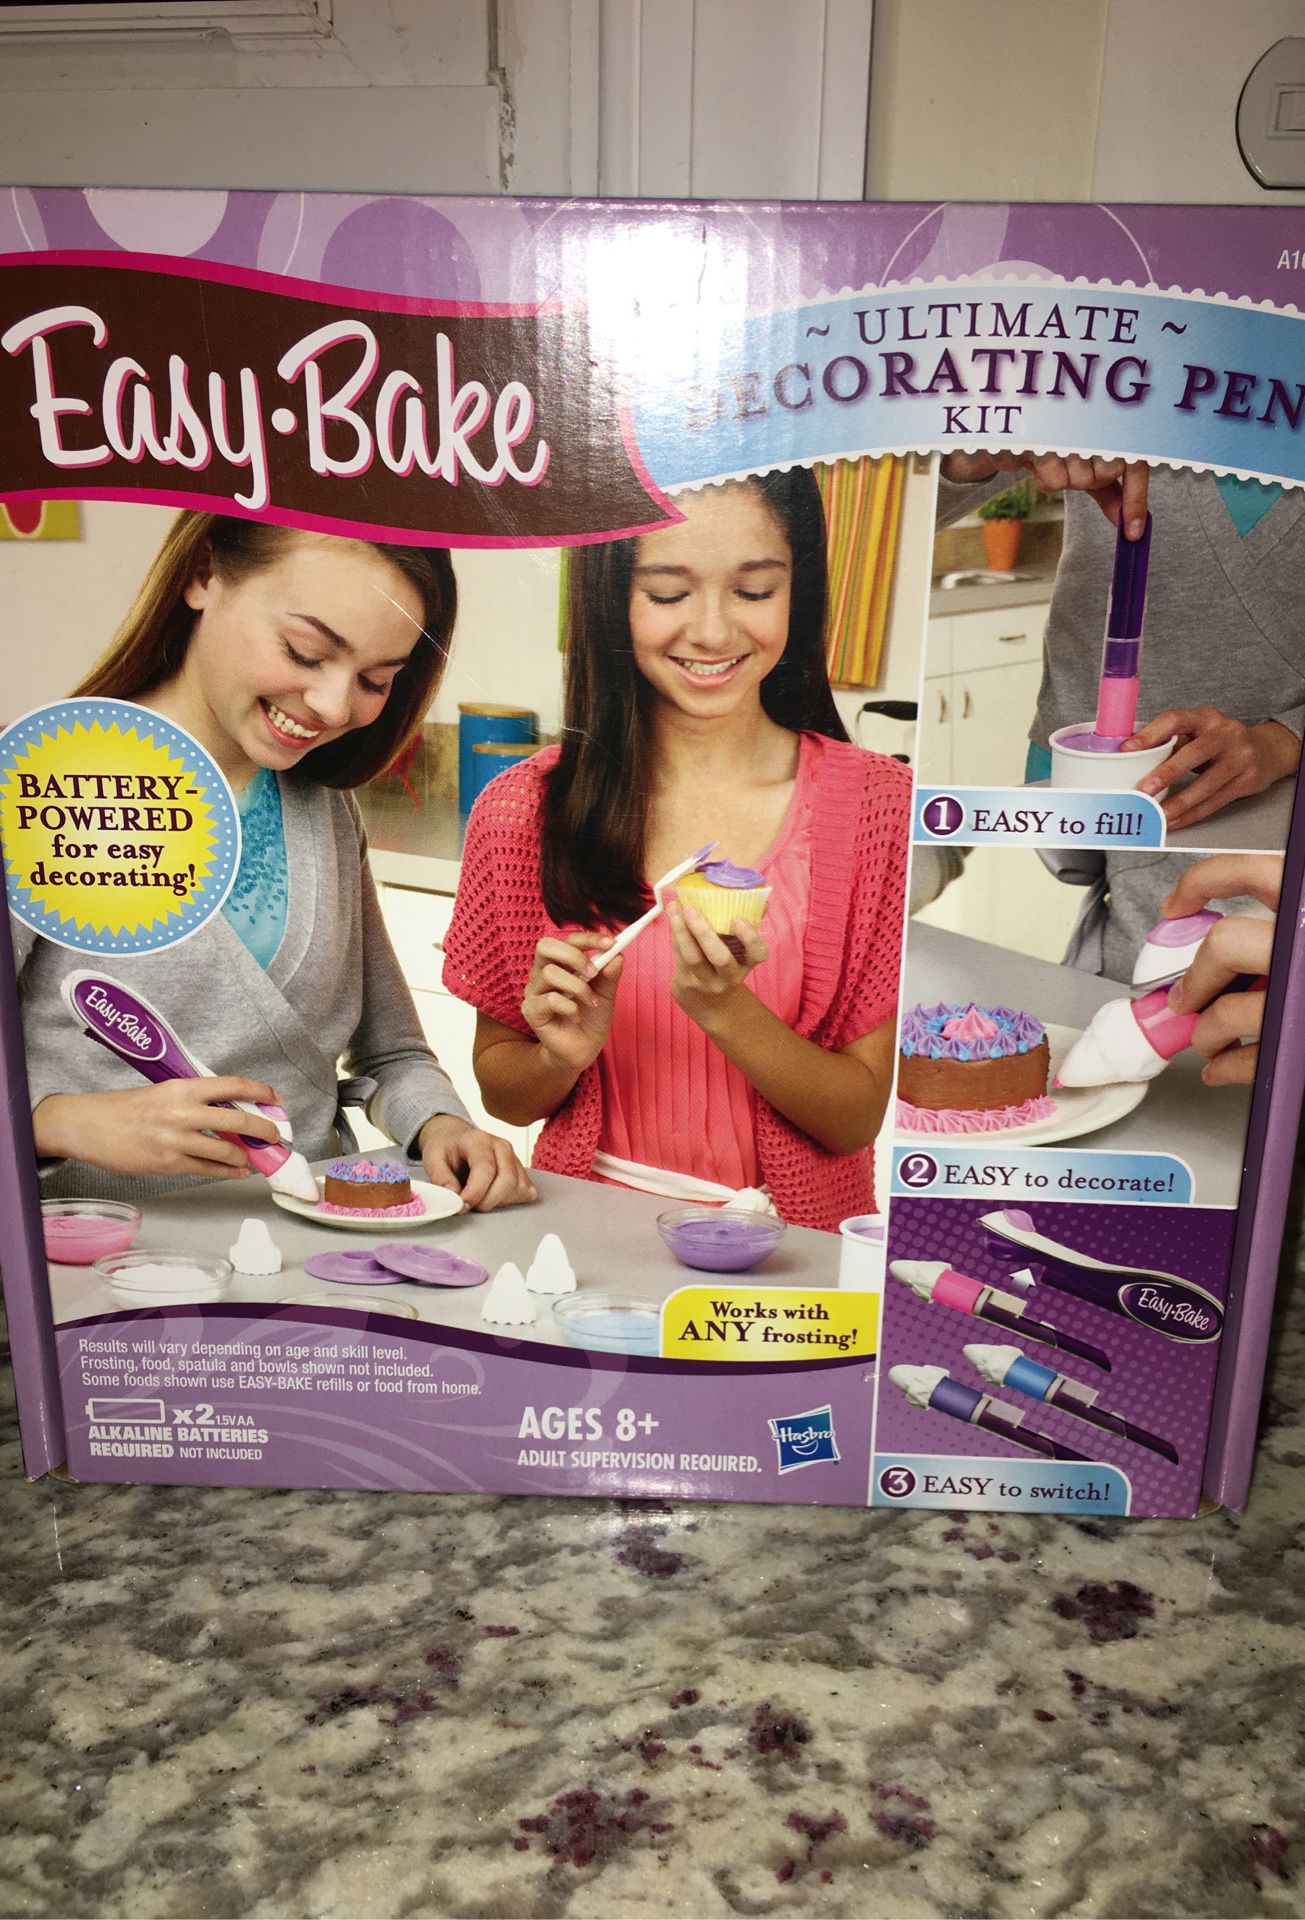 Easy bake ultimate decorating pen kit